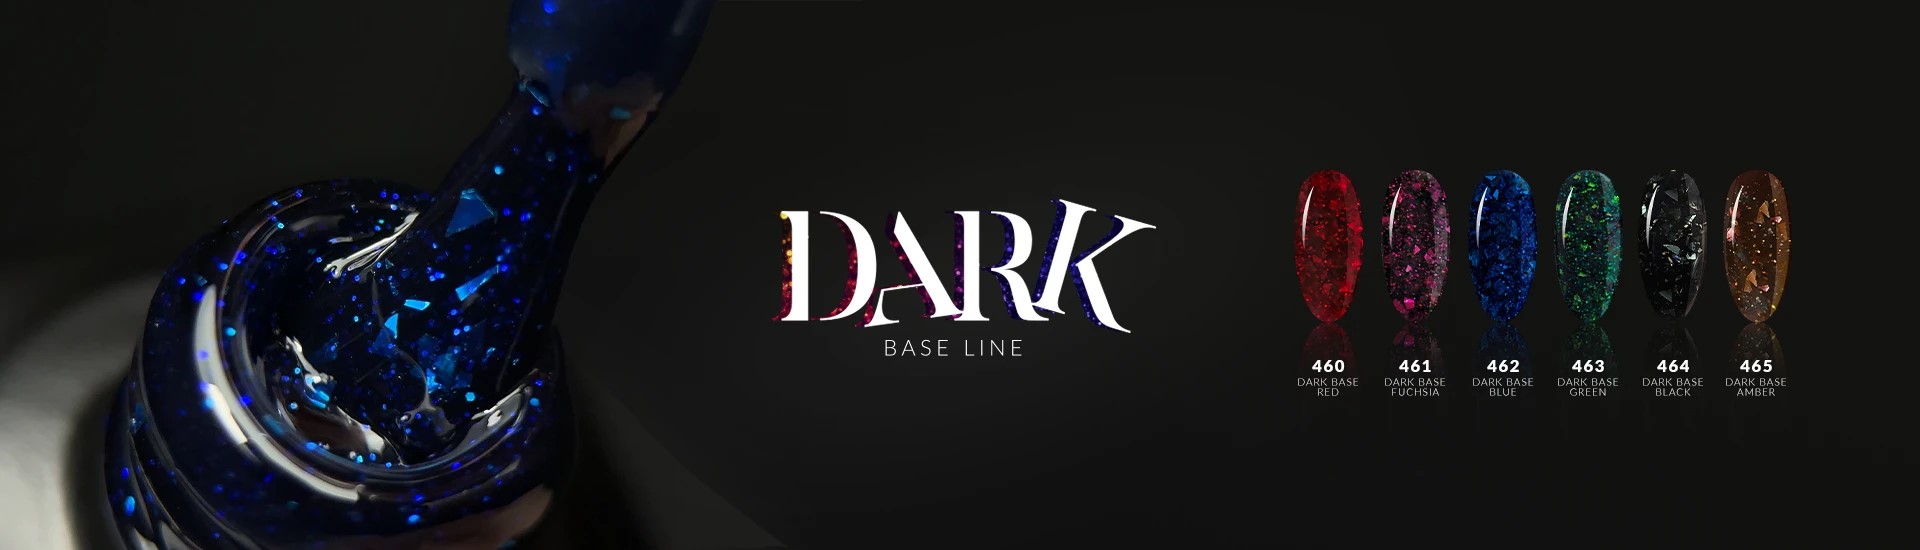 Dark Base Cover Line - Natural Base Line